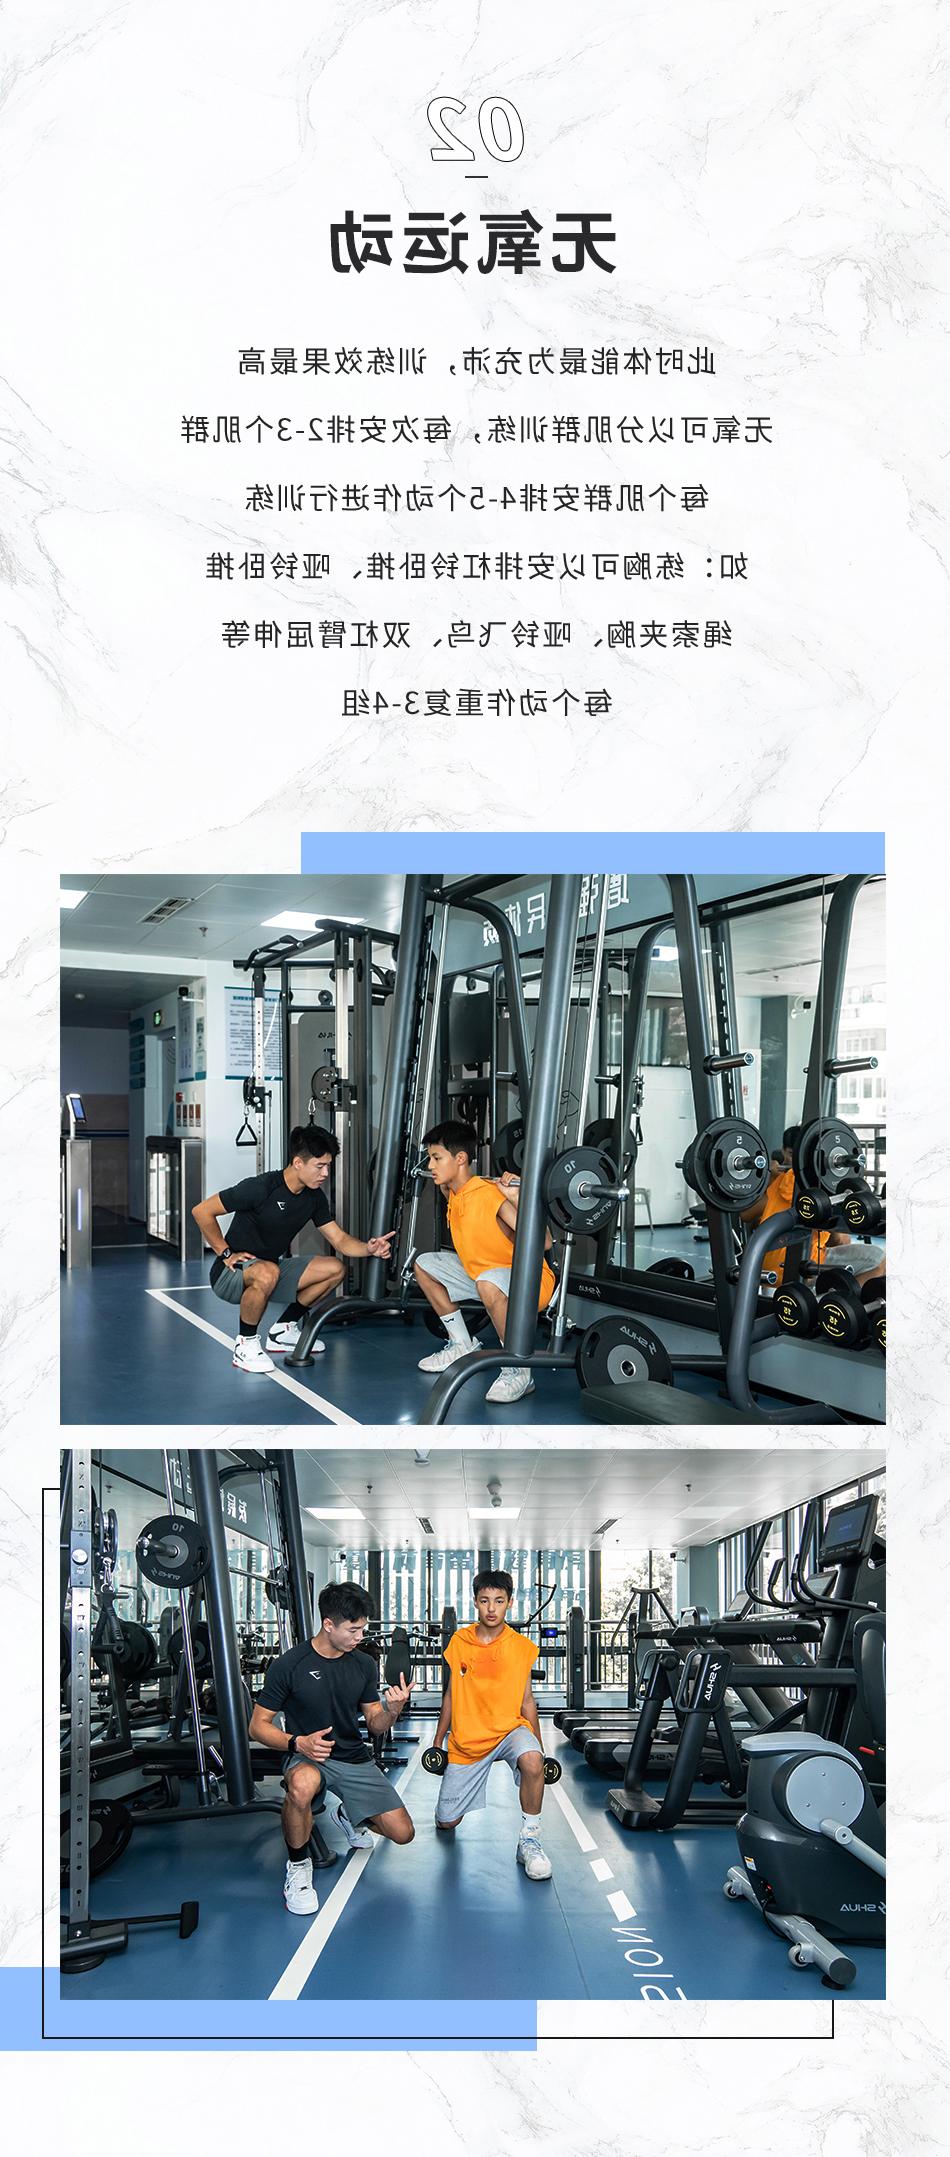 科学运动 如何充分利用健身房进行高效运动2A2.jpg